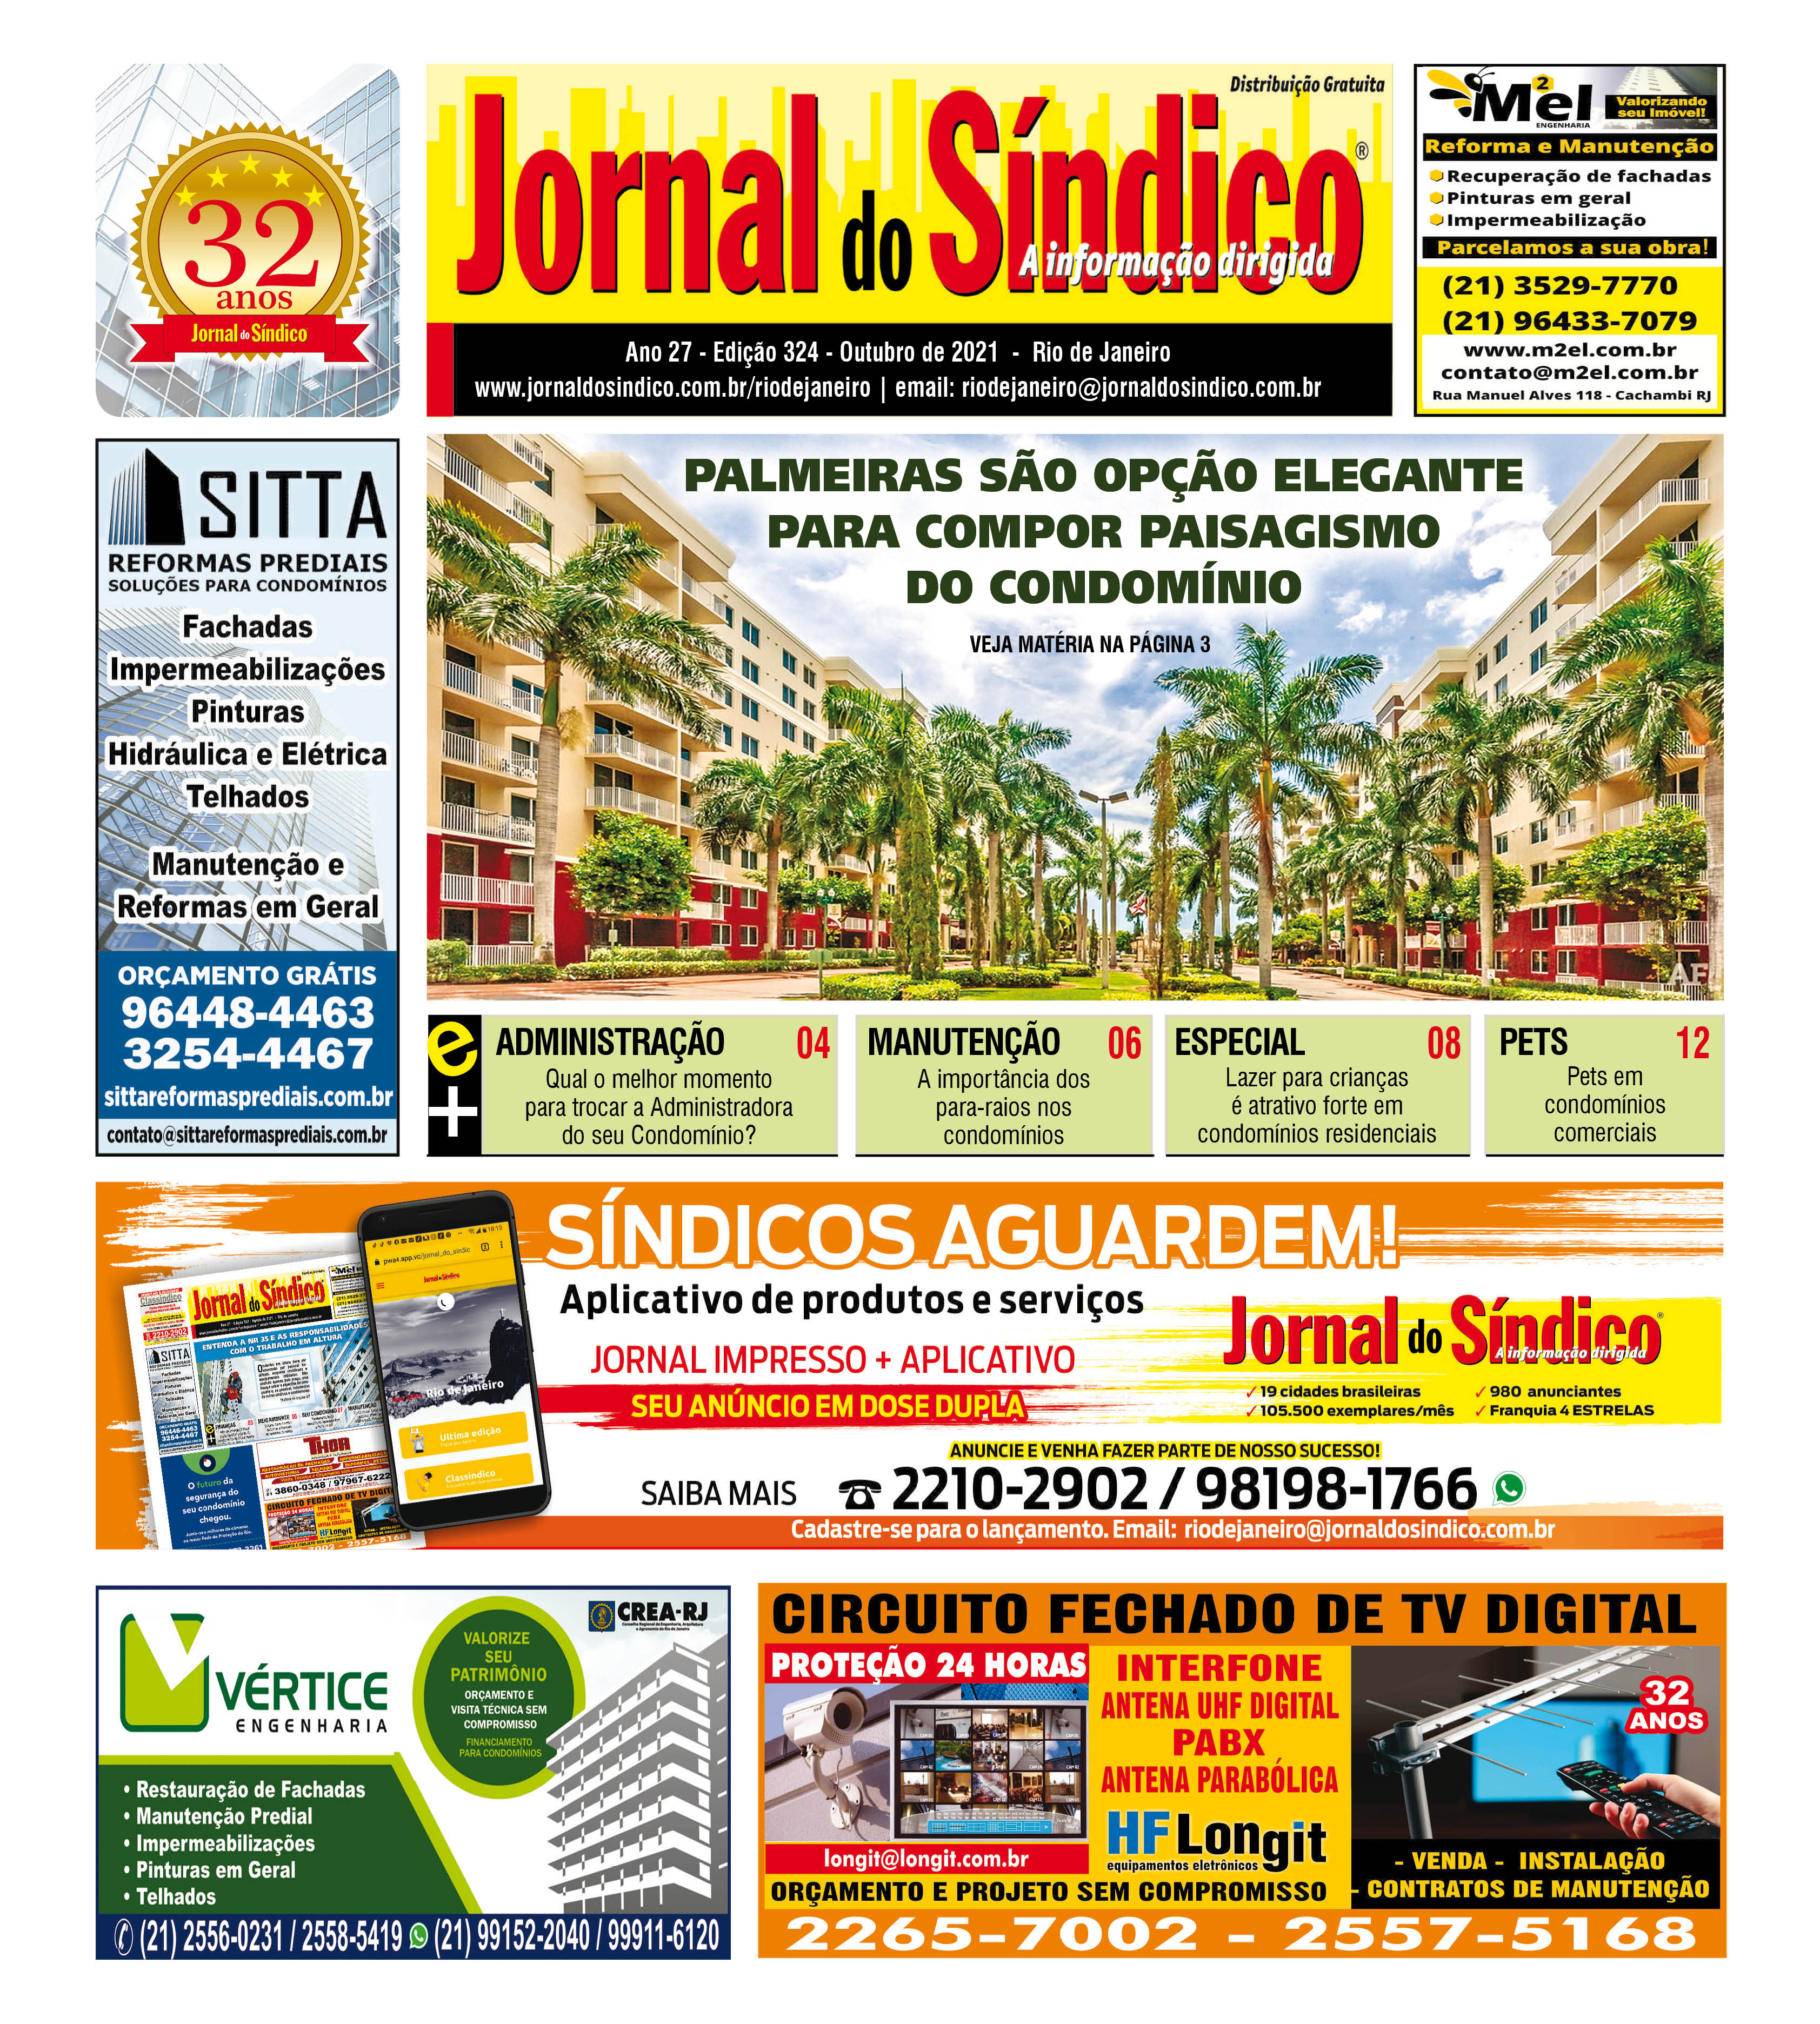 JSRJ 324 - OUTUBRO 2021 - 12 paginas